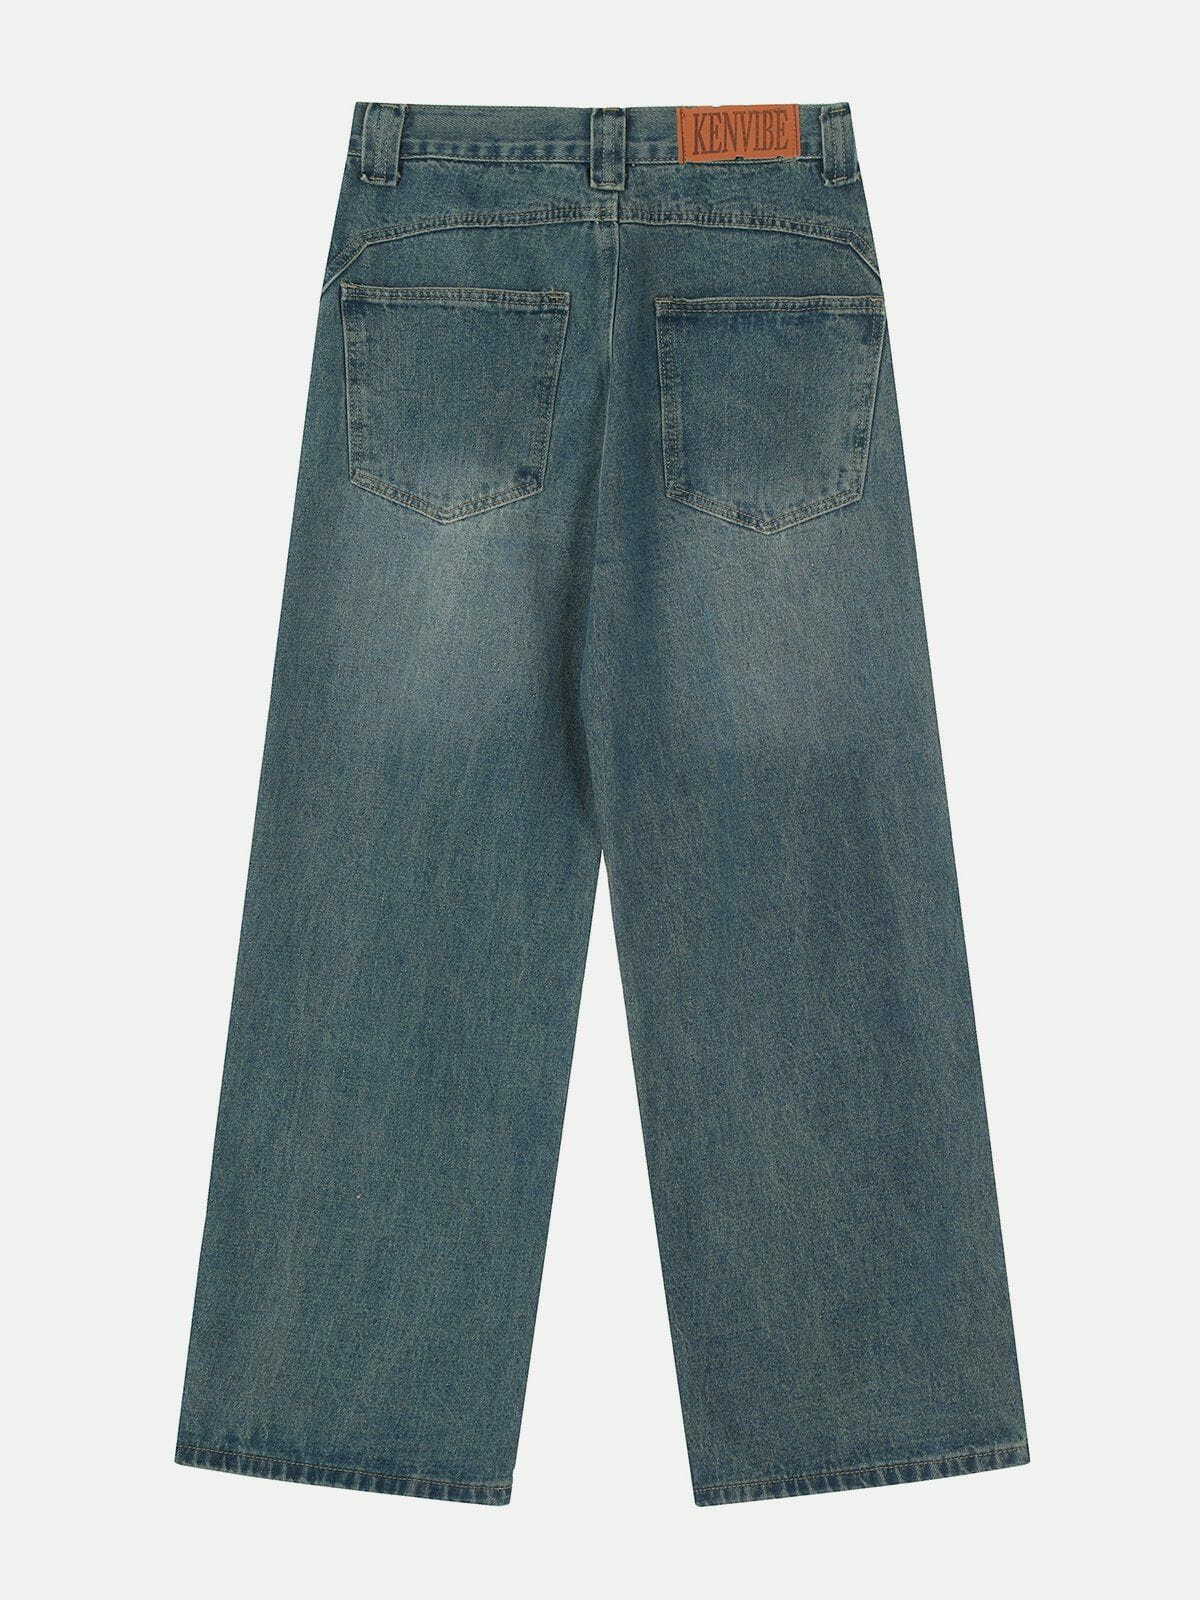 retro folded jeans edgy & stylish denim 7149